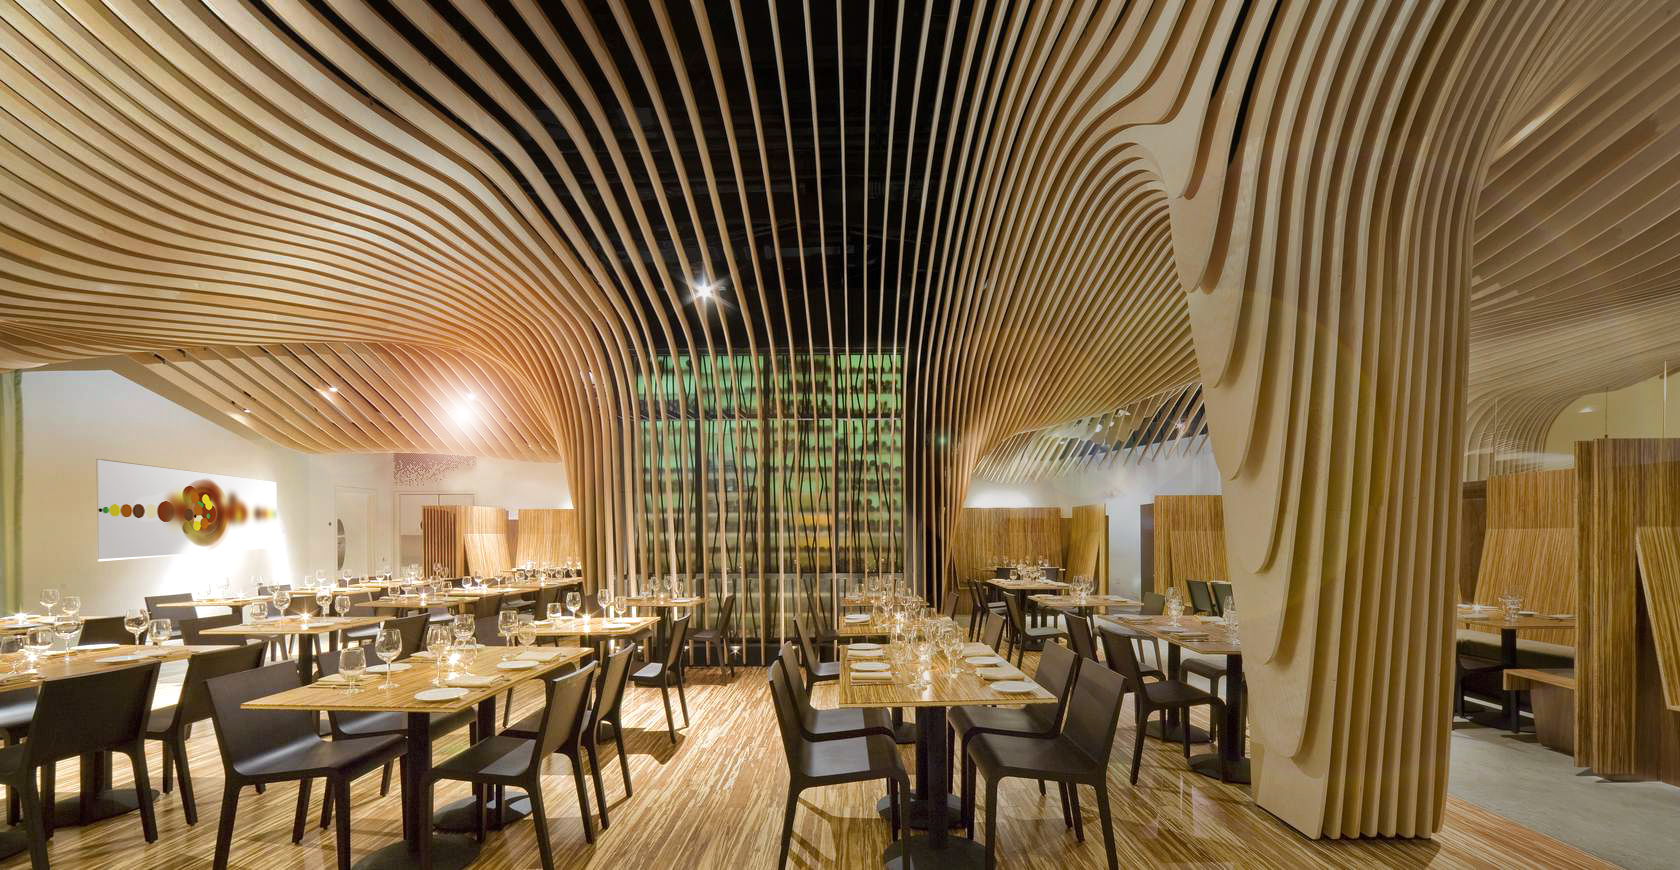 Innenarchitektur des Restaurant UMAMI: Die Decke besteht aus lamellenförmigen Holzschichten. An den Wänden sind Bildern aus der Geschmacksvisualisierung.